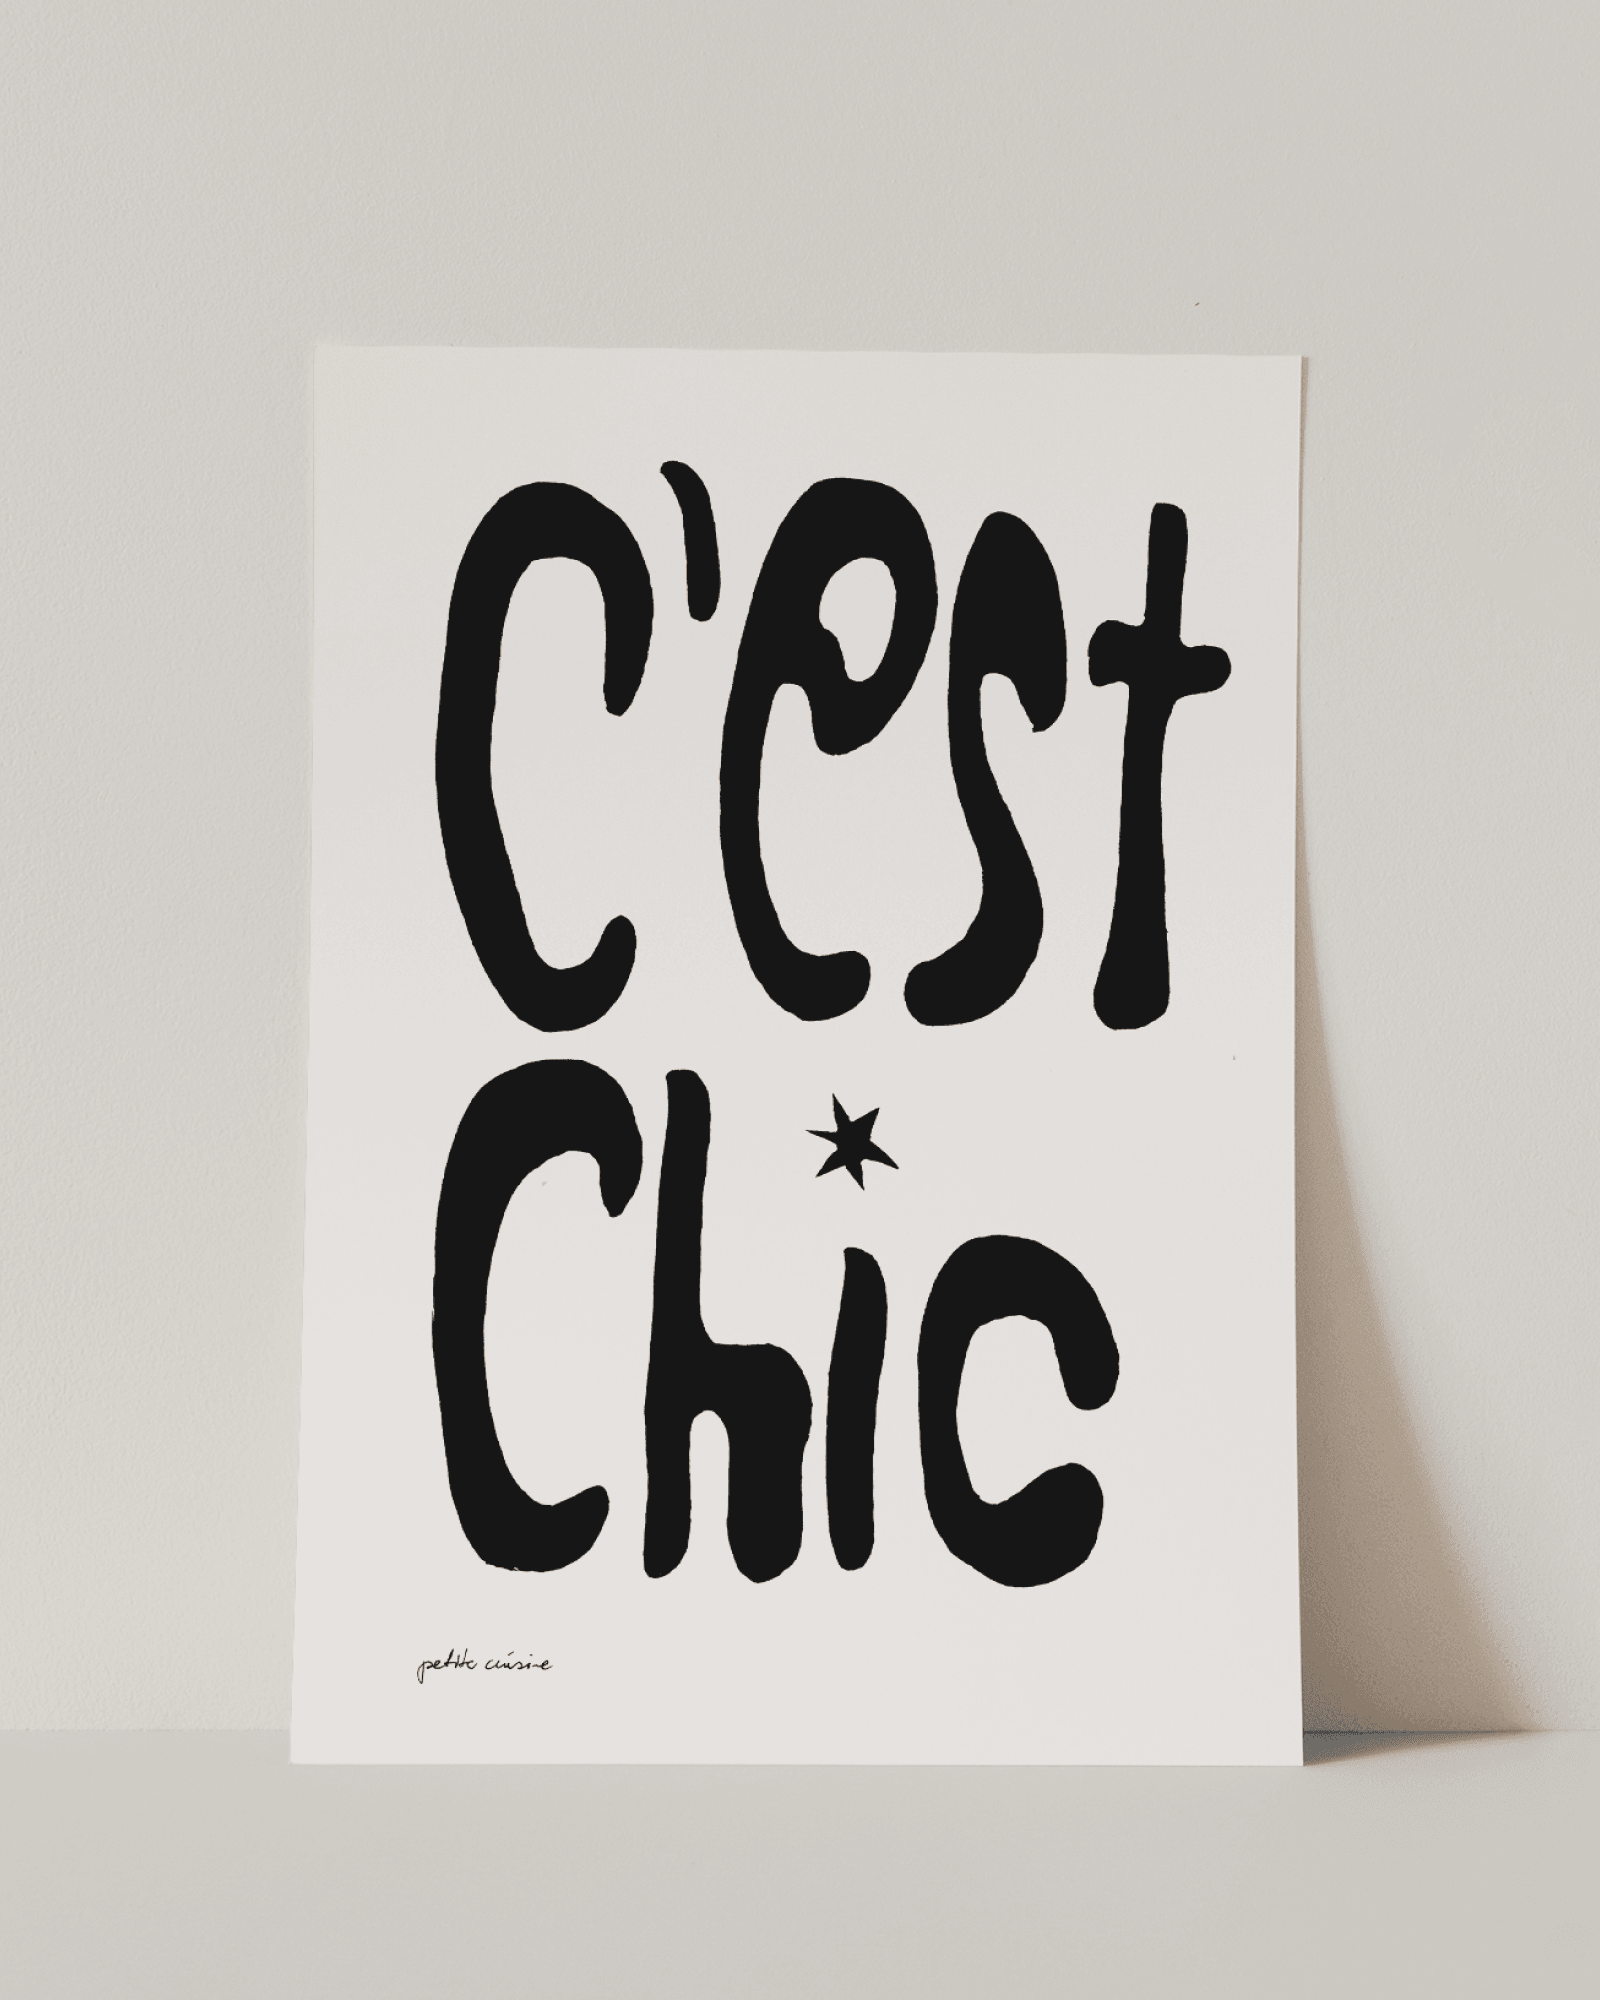 C'EST CHIC noir – Petite Cuisine Galerie